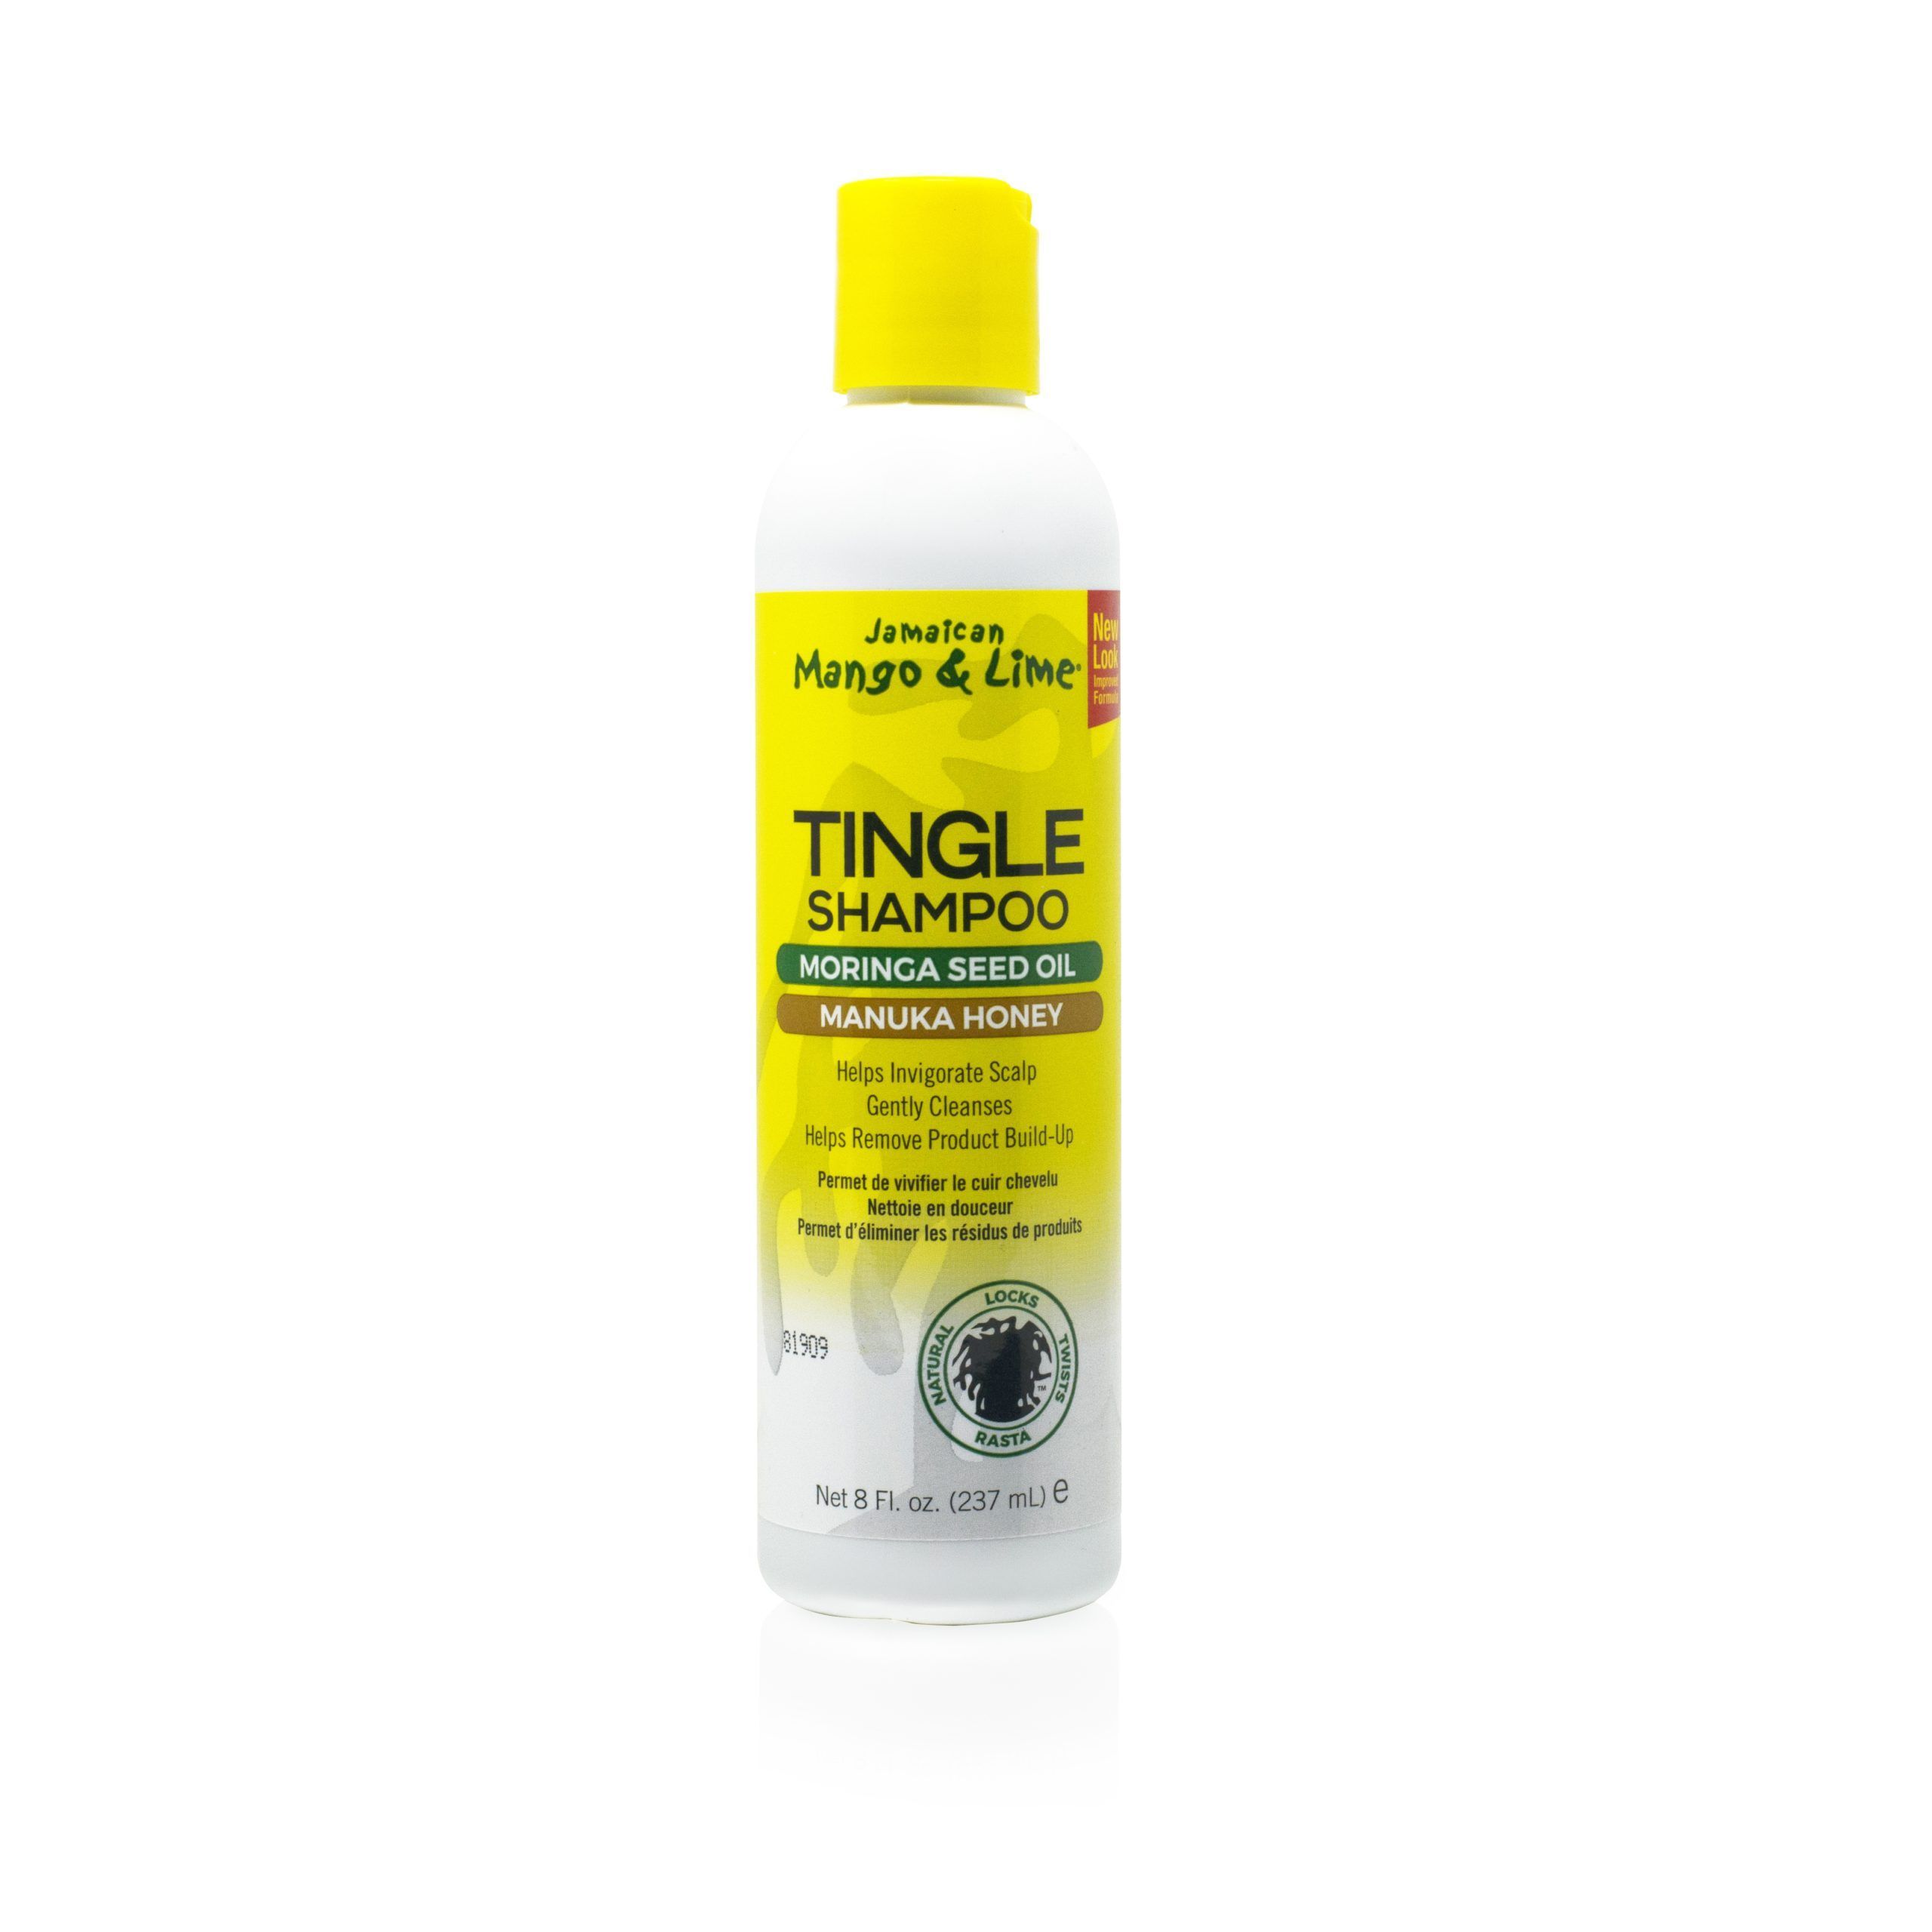 Jamaican Mango & Lime Tingle Shampoo - 8oz